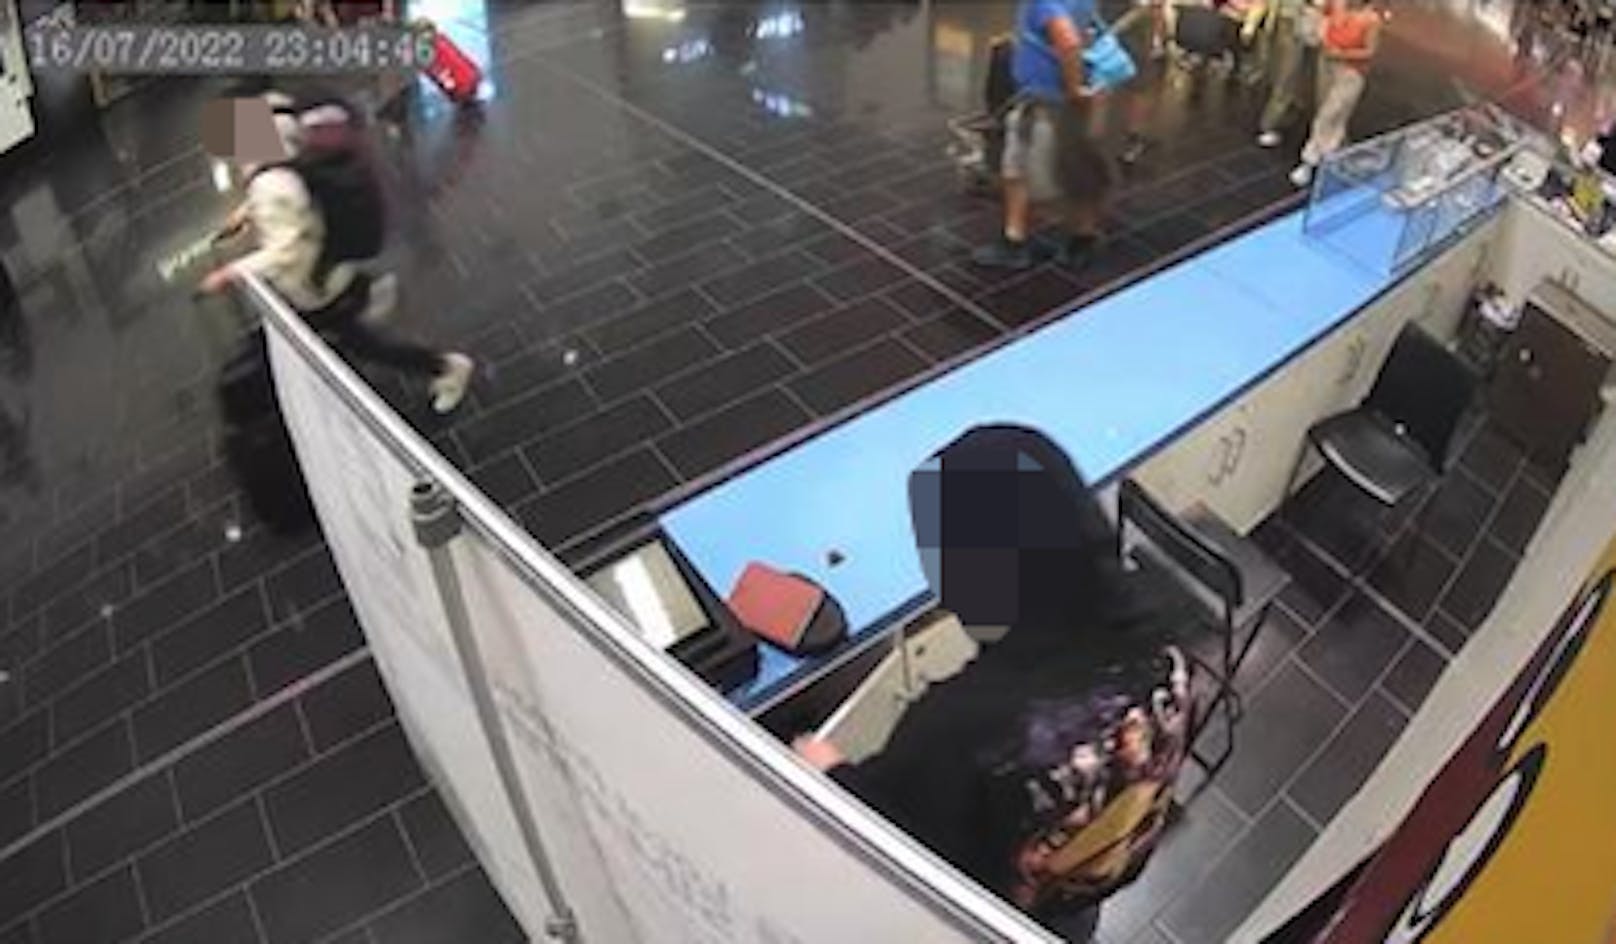 Am Flughafen Wien-Schwechat brach ein Unbekannter in ein Geschäft ein und räumte den Safe aus.